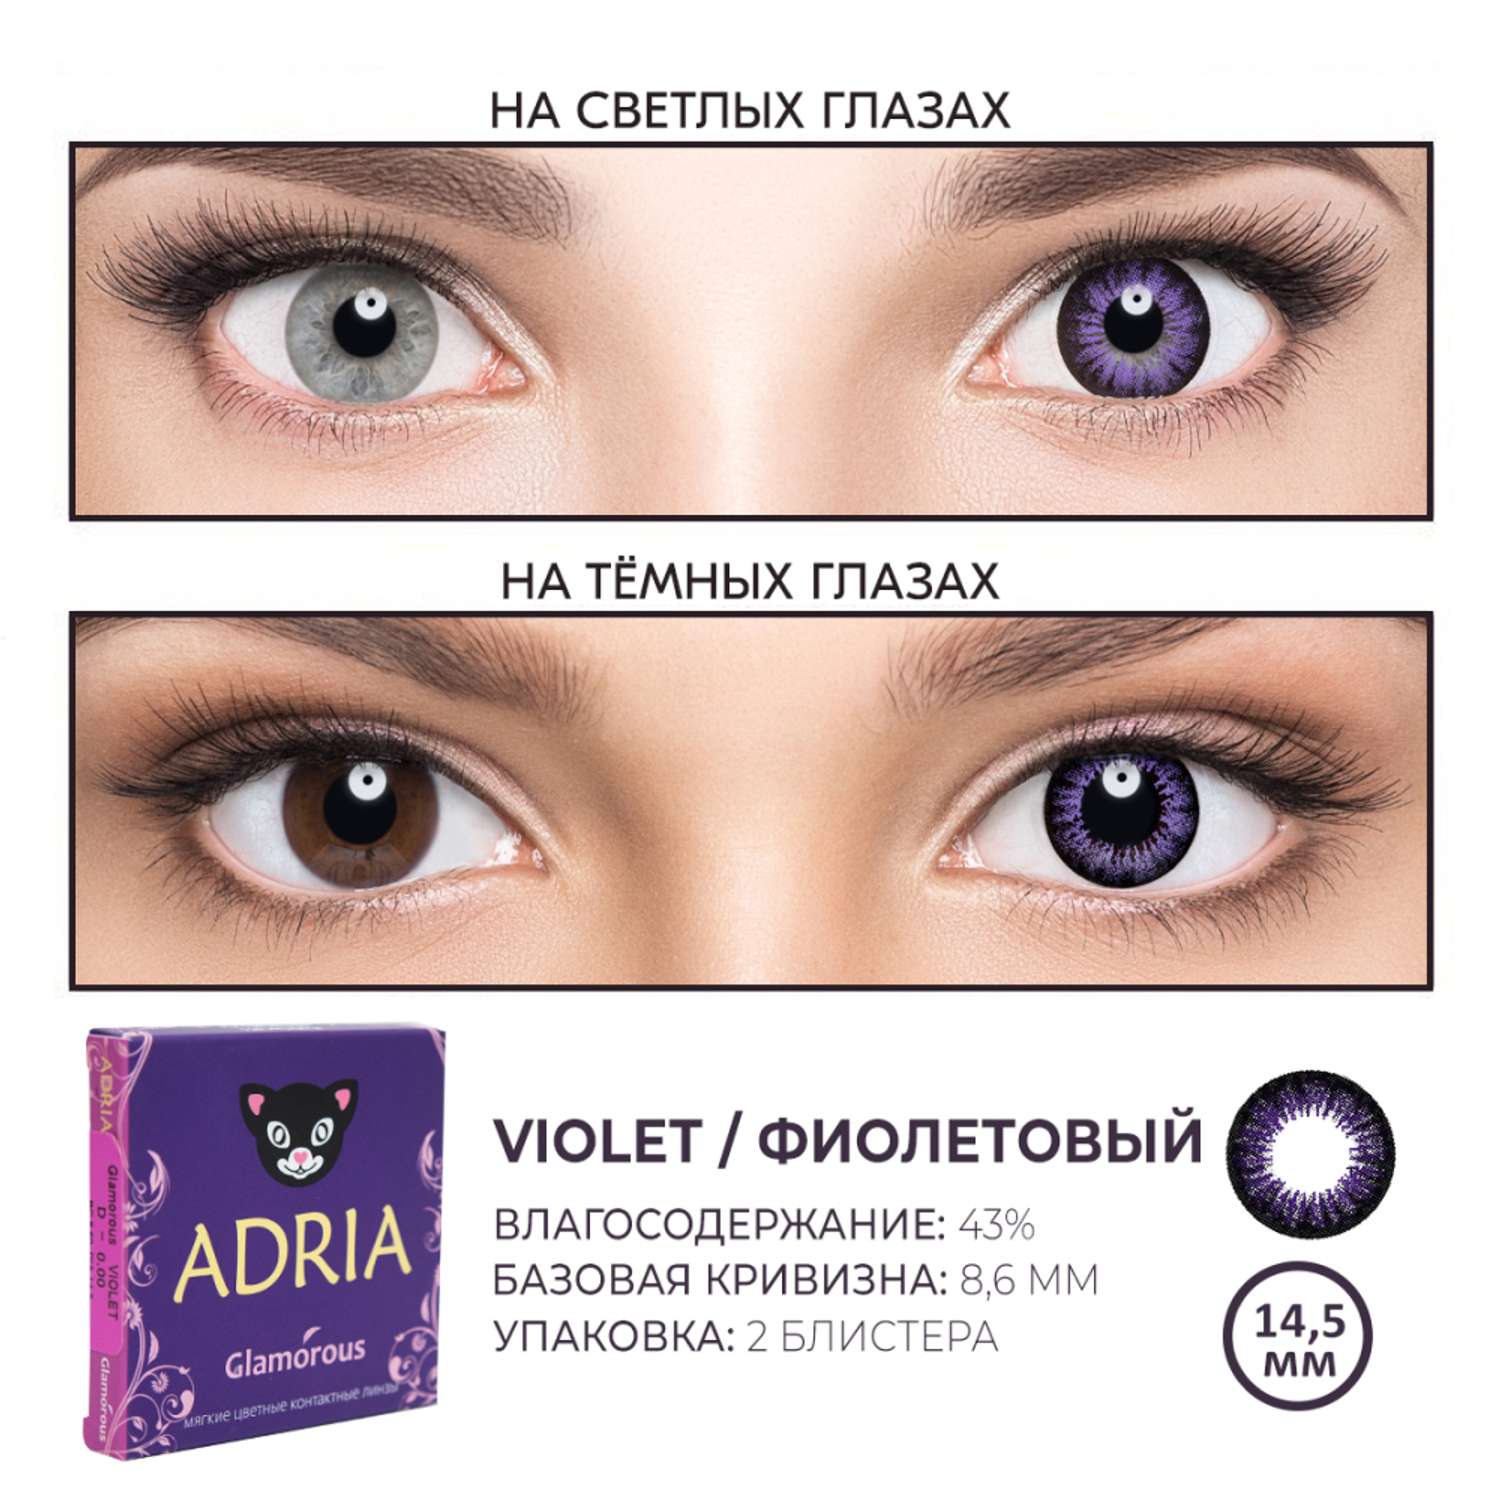 Цветные контактные линзы ADRIA Glamorous 2 линзы R 8.6 Violet -0.00 - фото 3